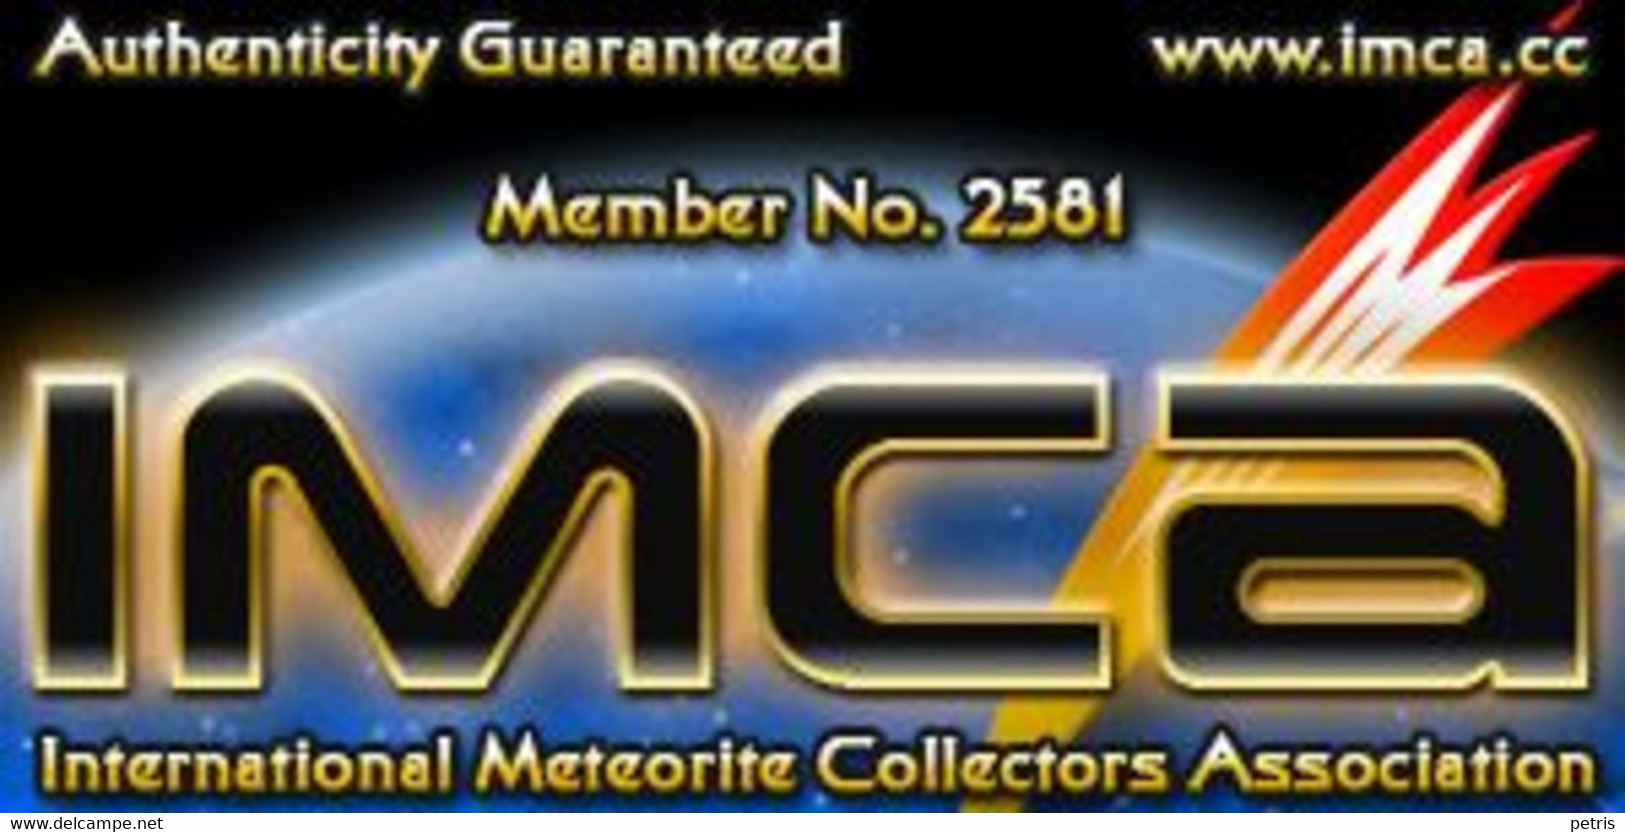 Meteorite Diogenite NWA 6690  (Morocco) - 5.8 Gr - Meteorites